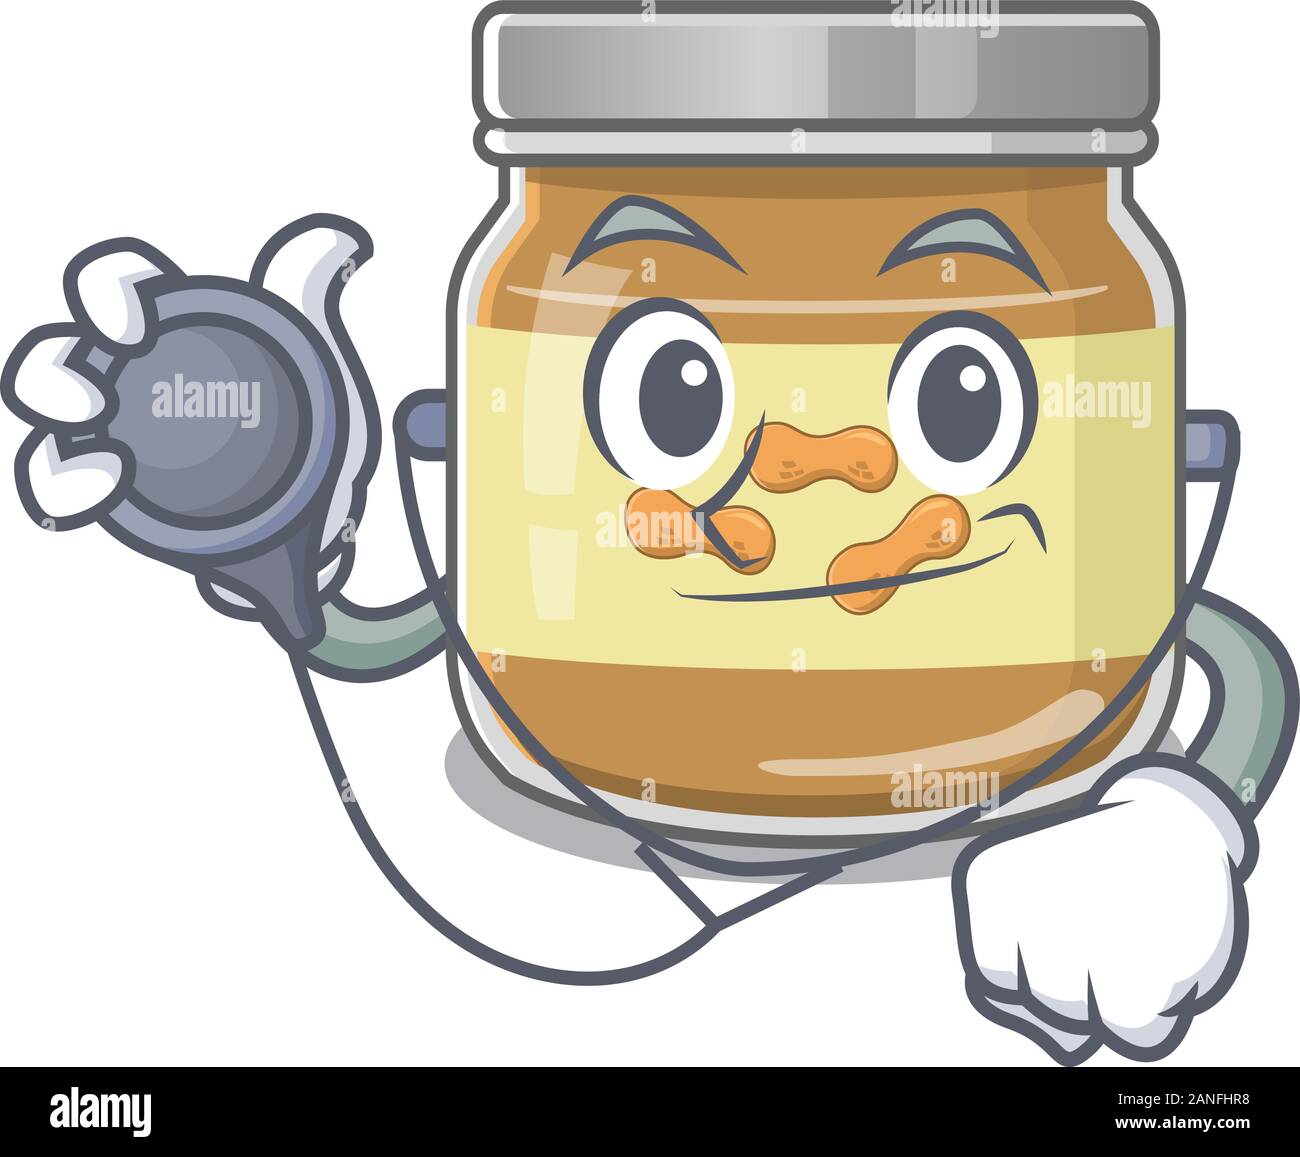 Smart et cool le beurre d'arachide dans un personnage de médecin avec des outils Illustration de Vecteur